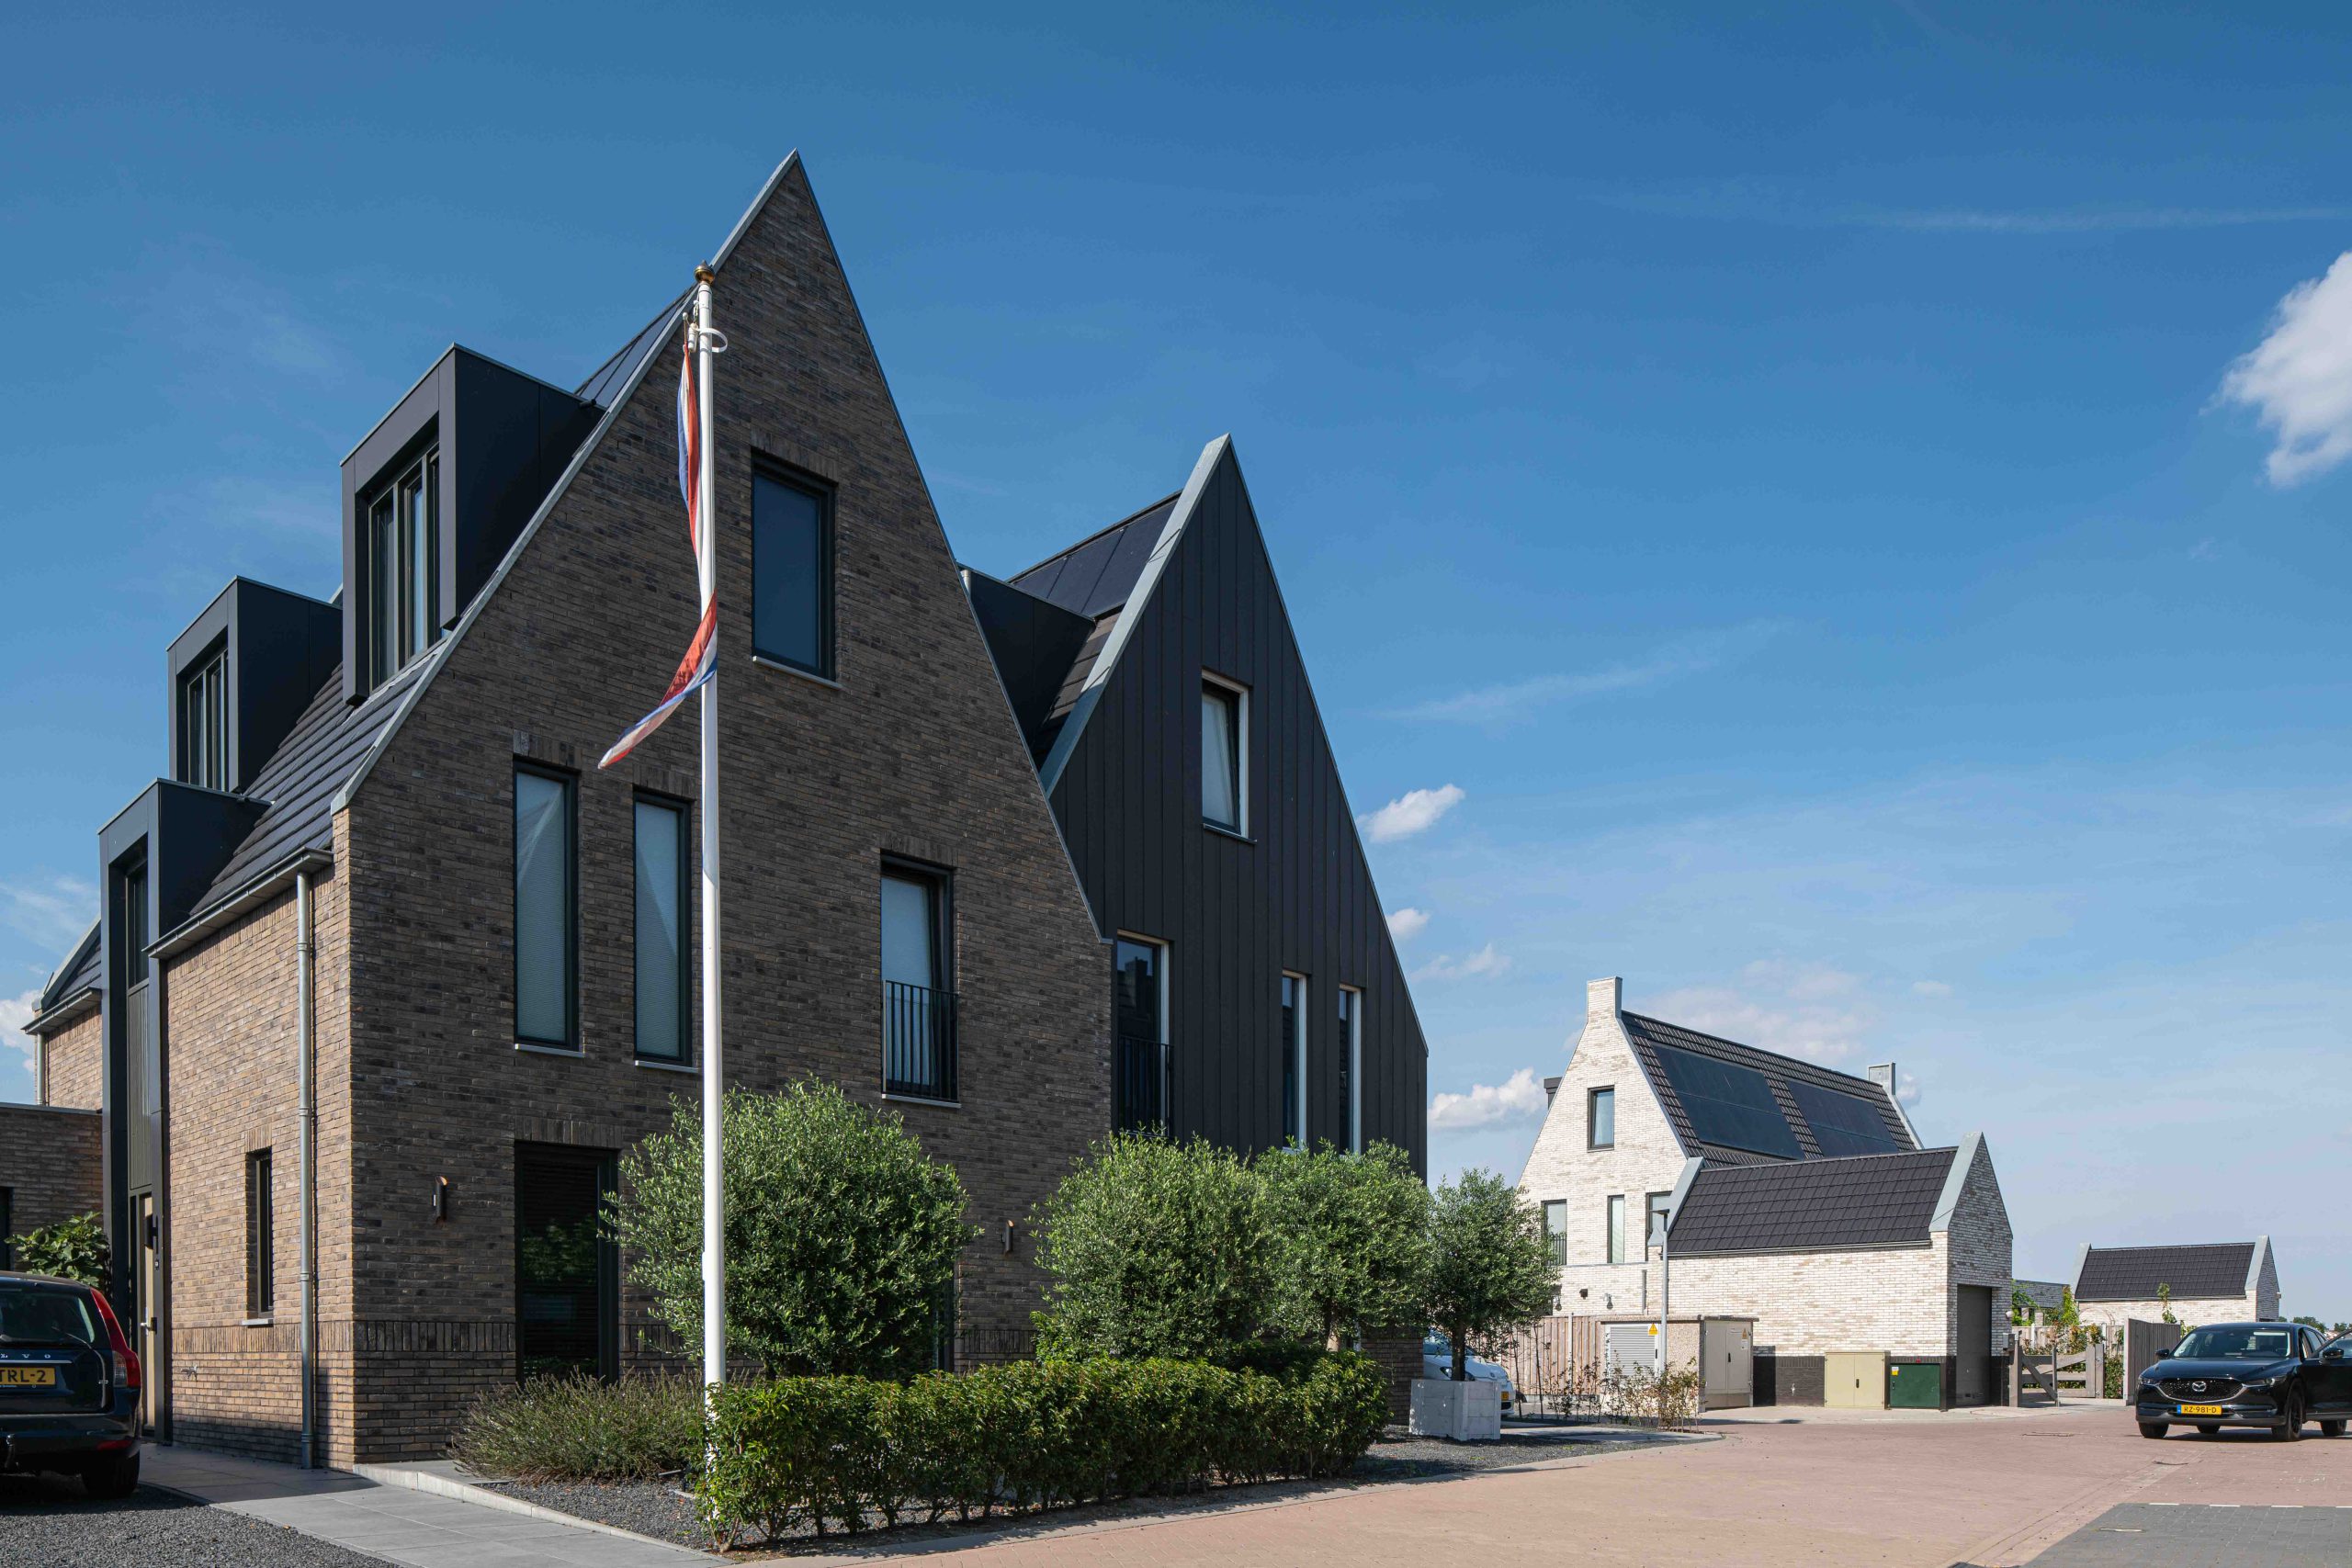 ENZO architectuur N interieur - Haarlemmermeer - Silo - Burgerveen - nieuwbouw - zakelijk - ontwikkeling - woonwijk - Lisserbroek - Quirinahoeve - Horsman&co